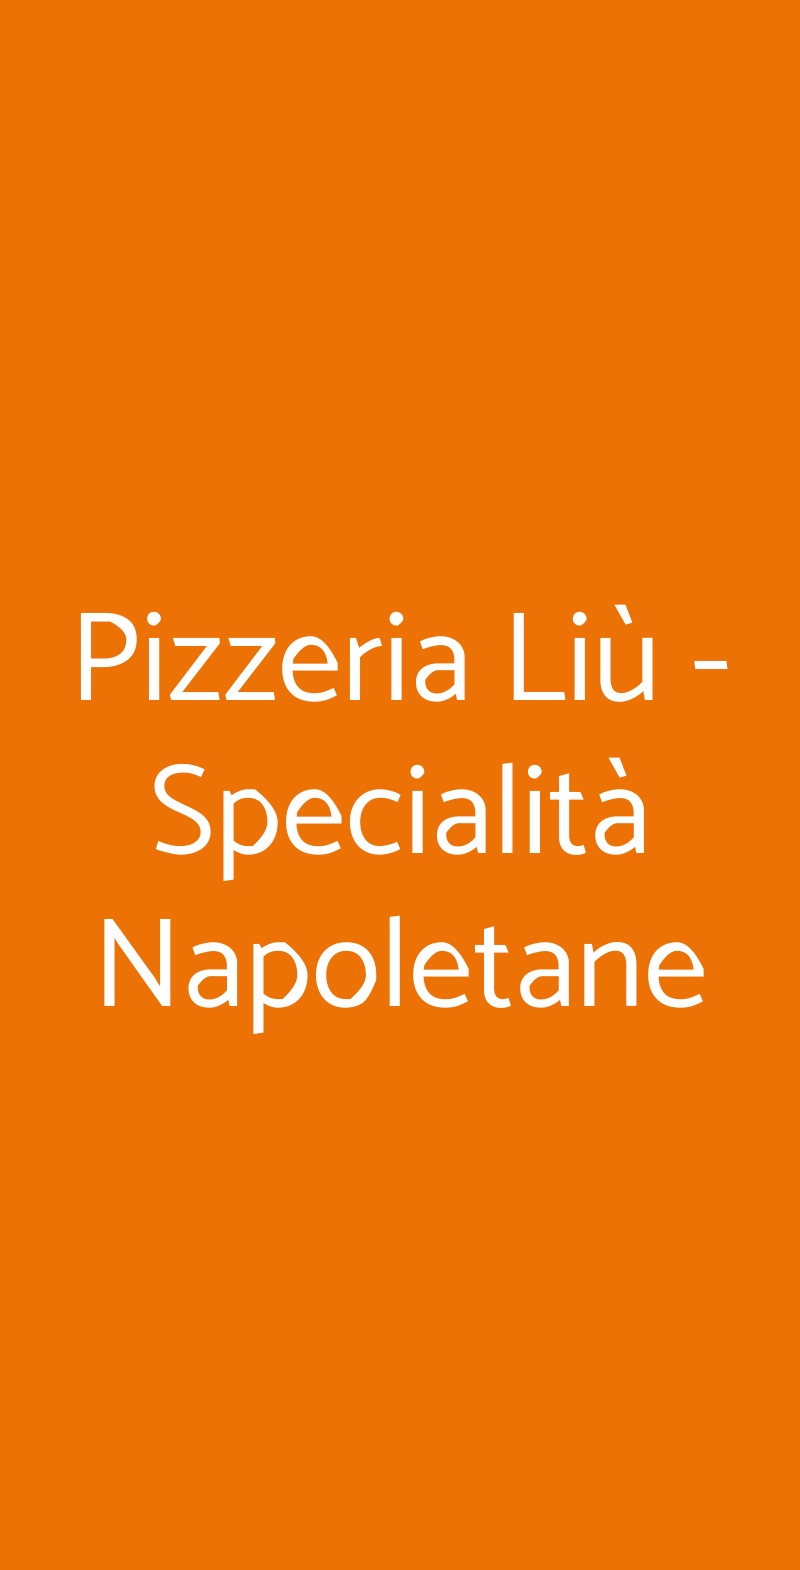 Pizzeria Liù - Specialità Napoletane Milano menù 1 pagina